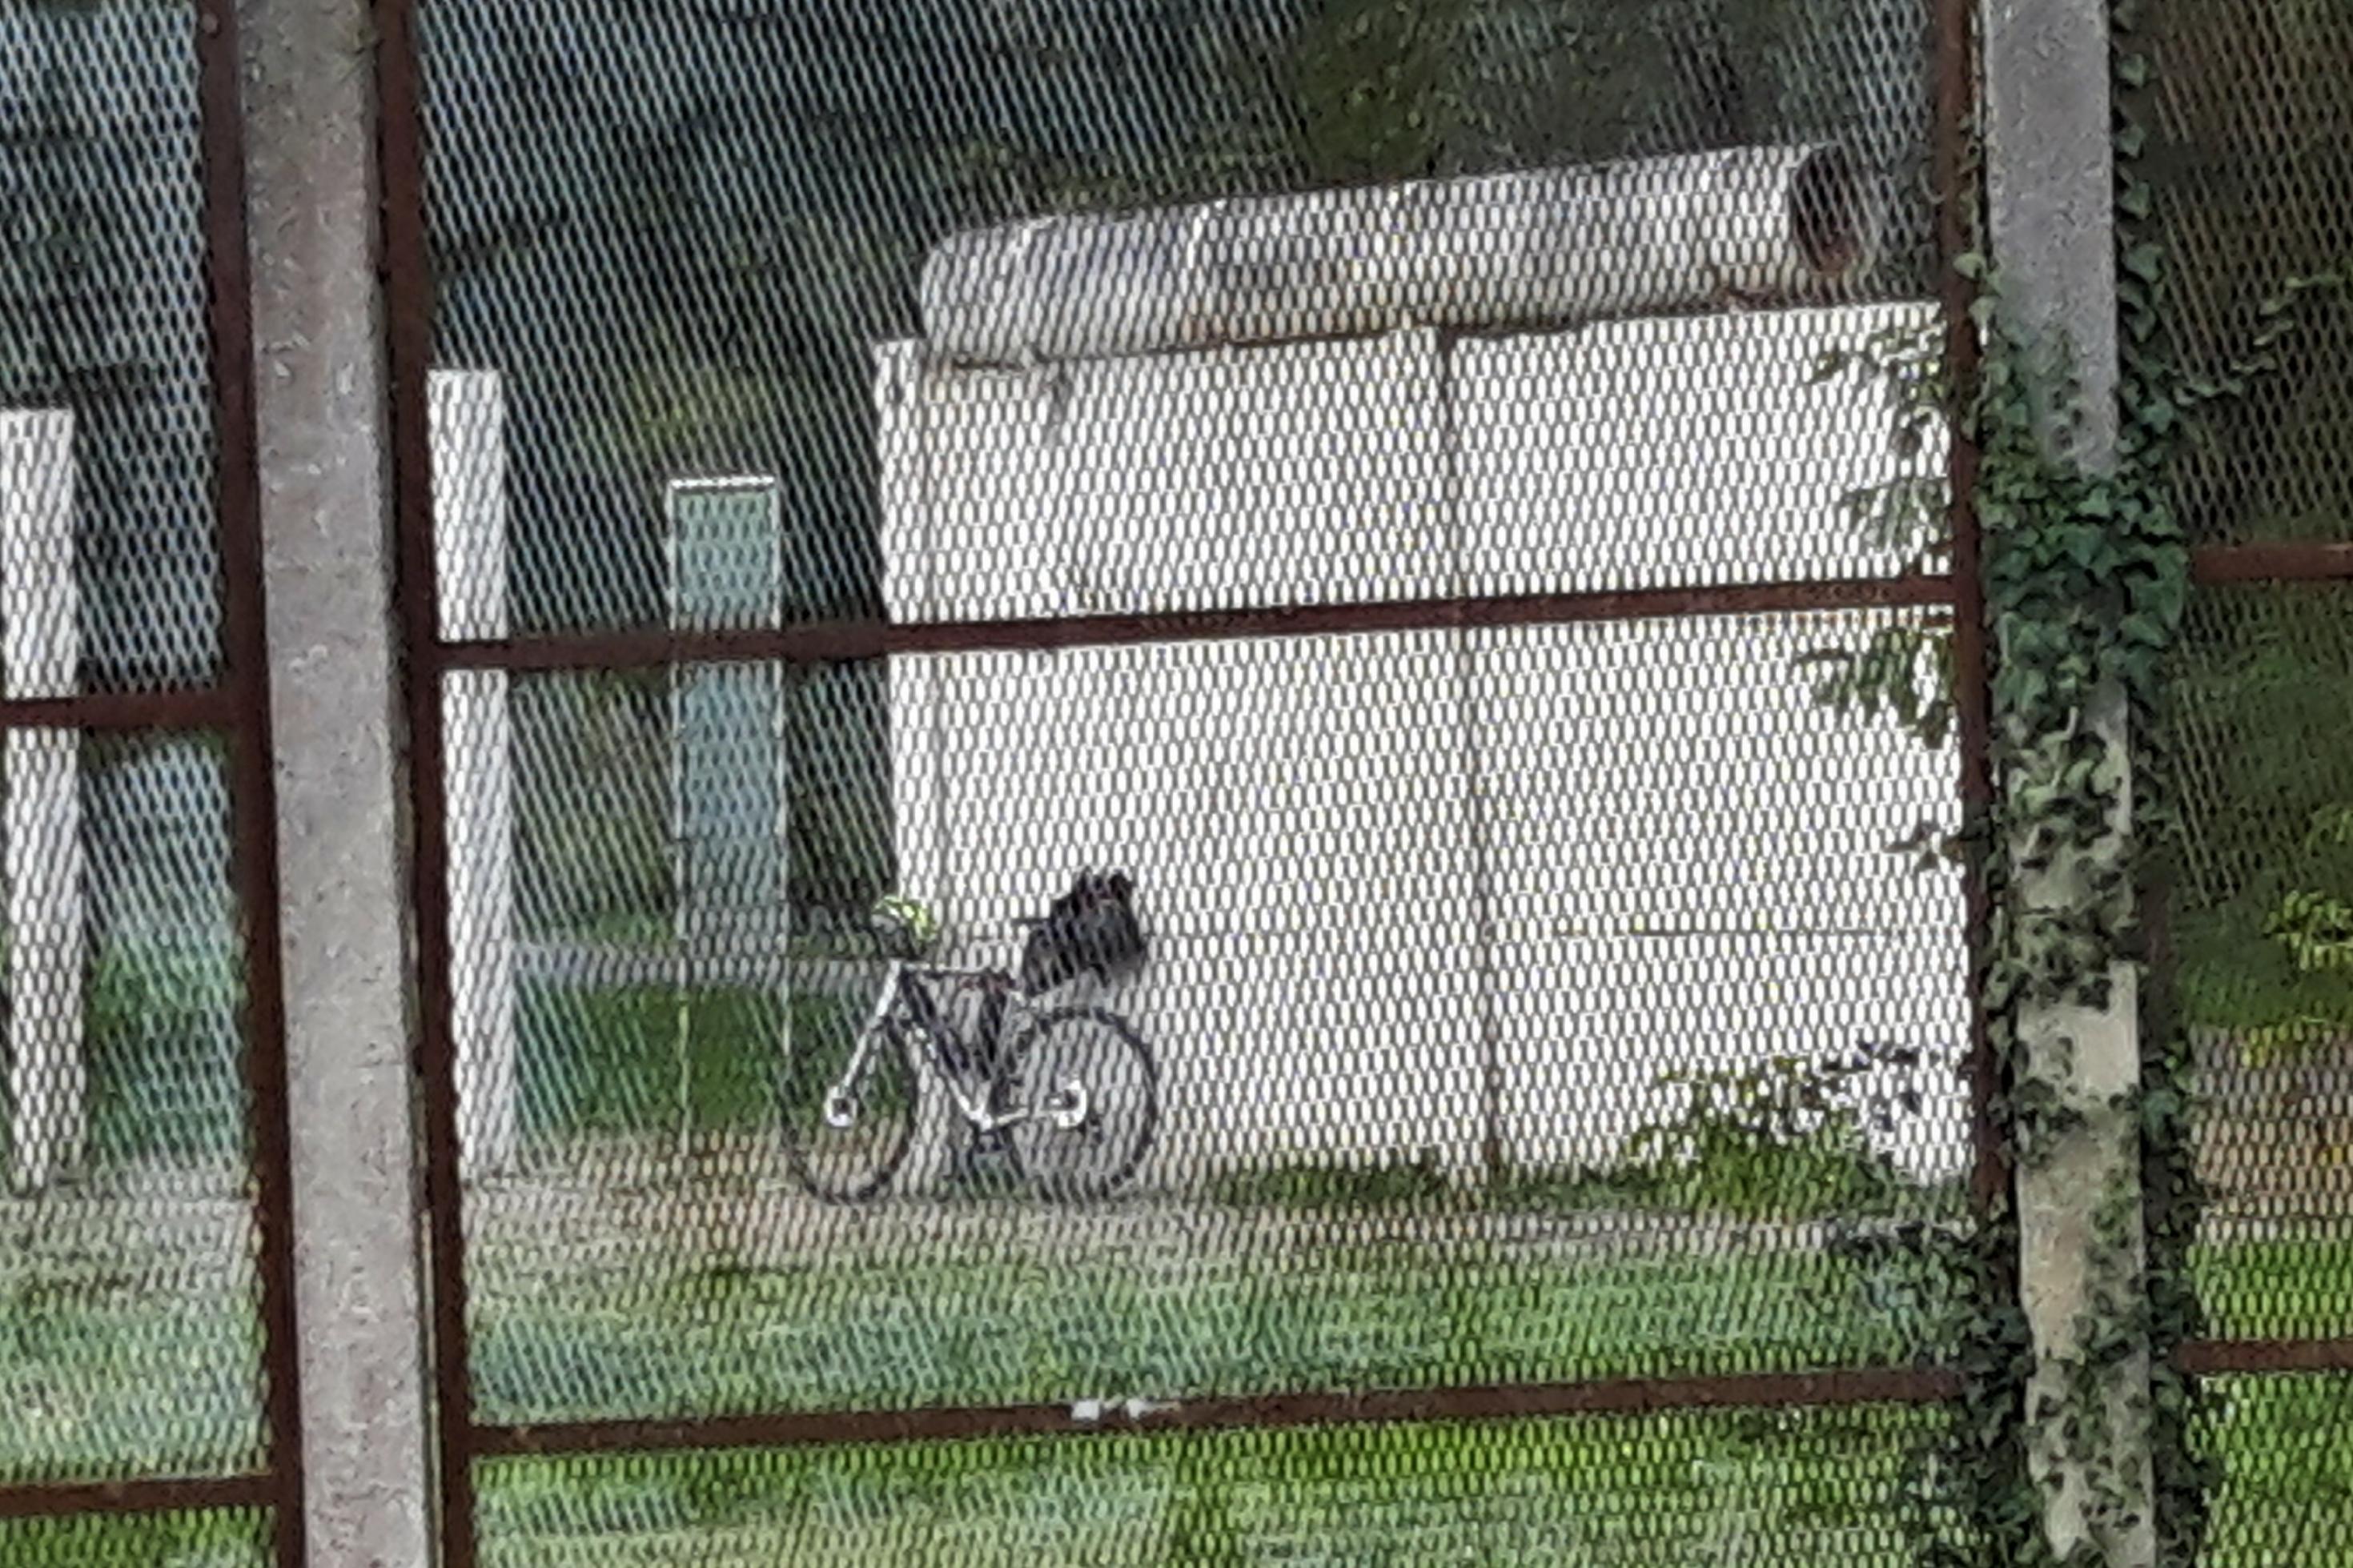 Im Hintergrund lehnt das Rad des RadelndenReporters an einem Überbleibsel der Berliner Mauer.